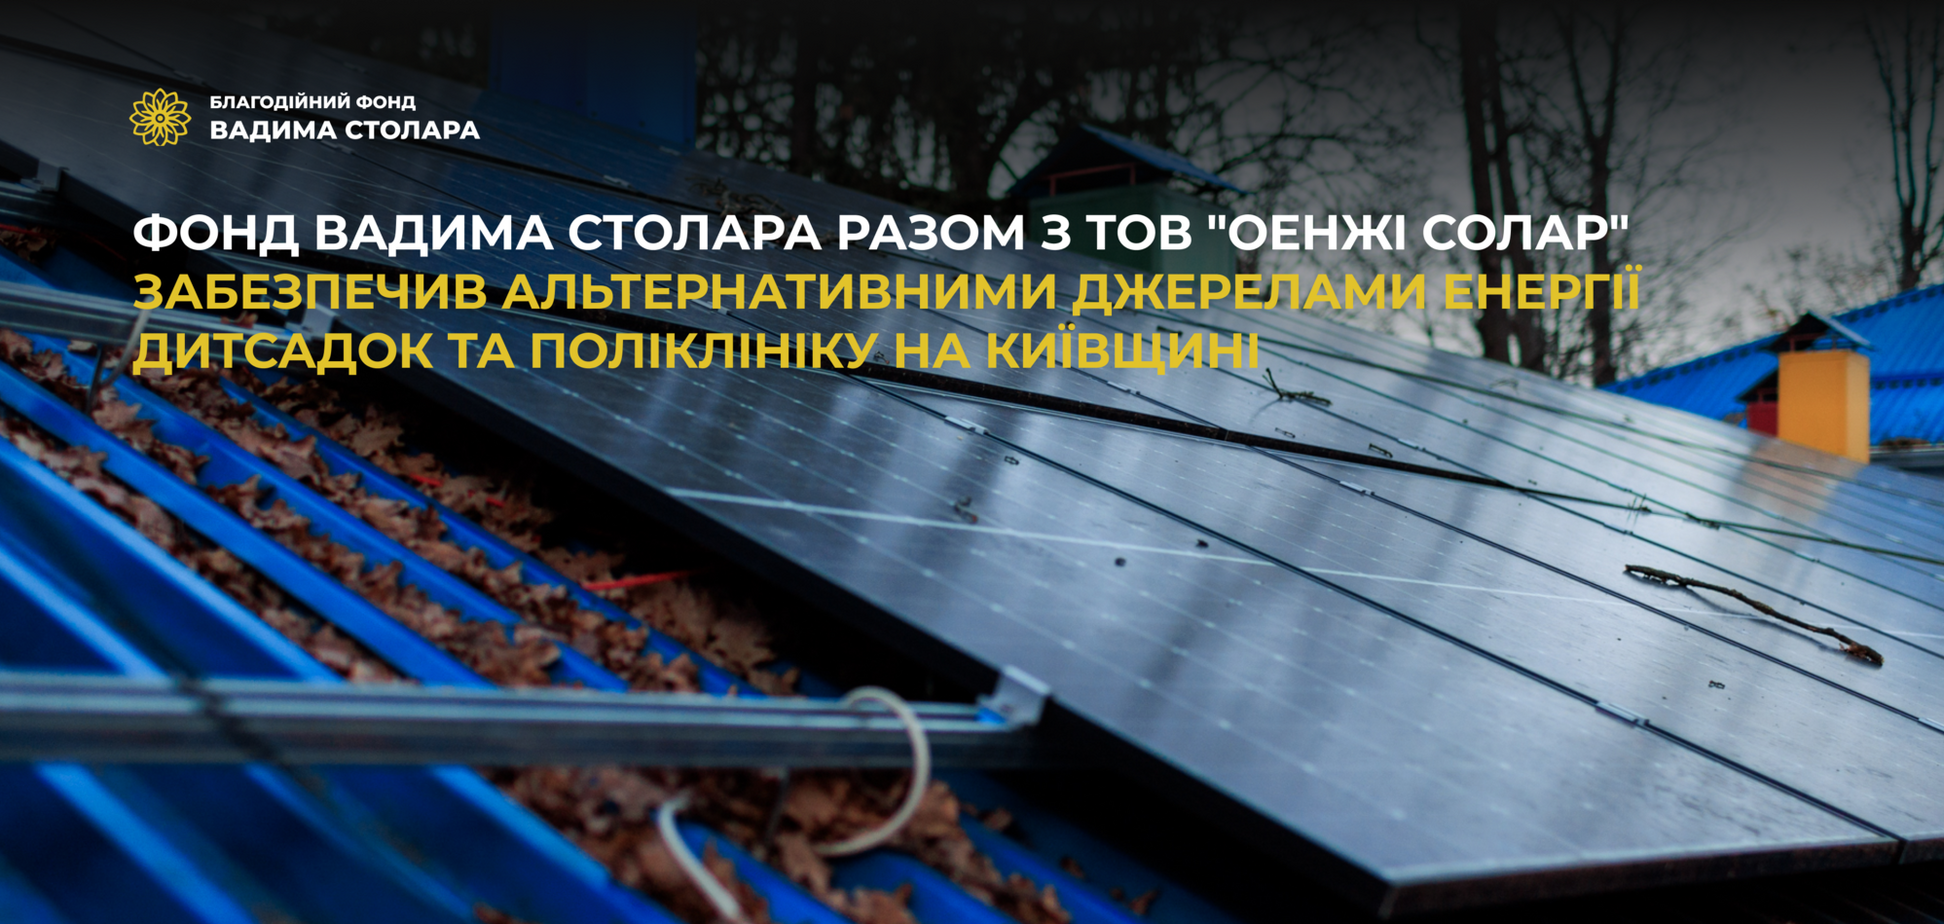 Детсад и поликлиника в Киевской области получили альтернативные источники энергии от Фонда Вадима Столара и 'ОЕНЖИ СОЛАР'